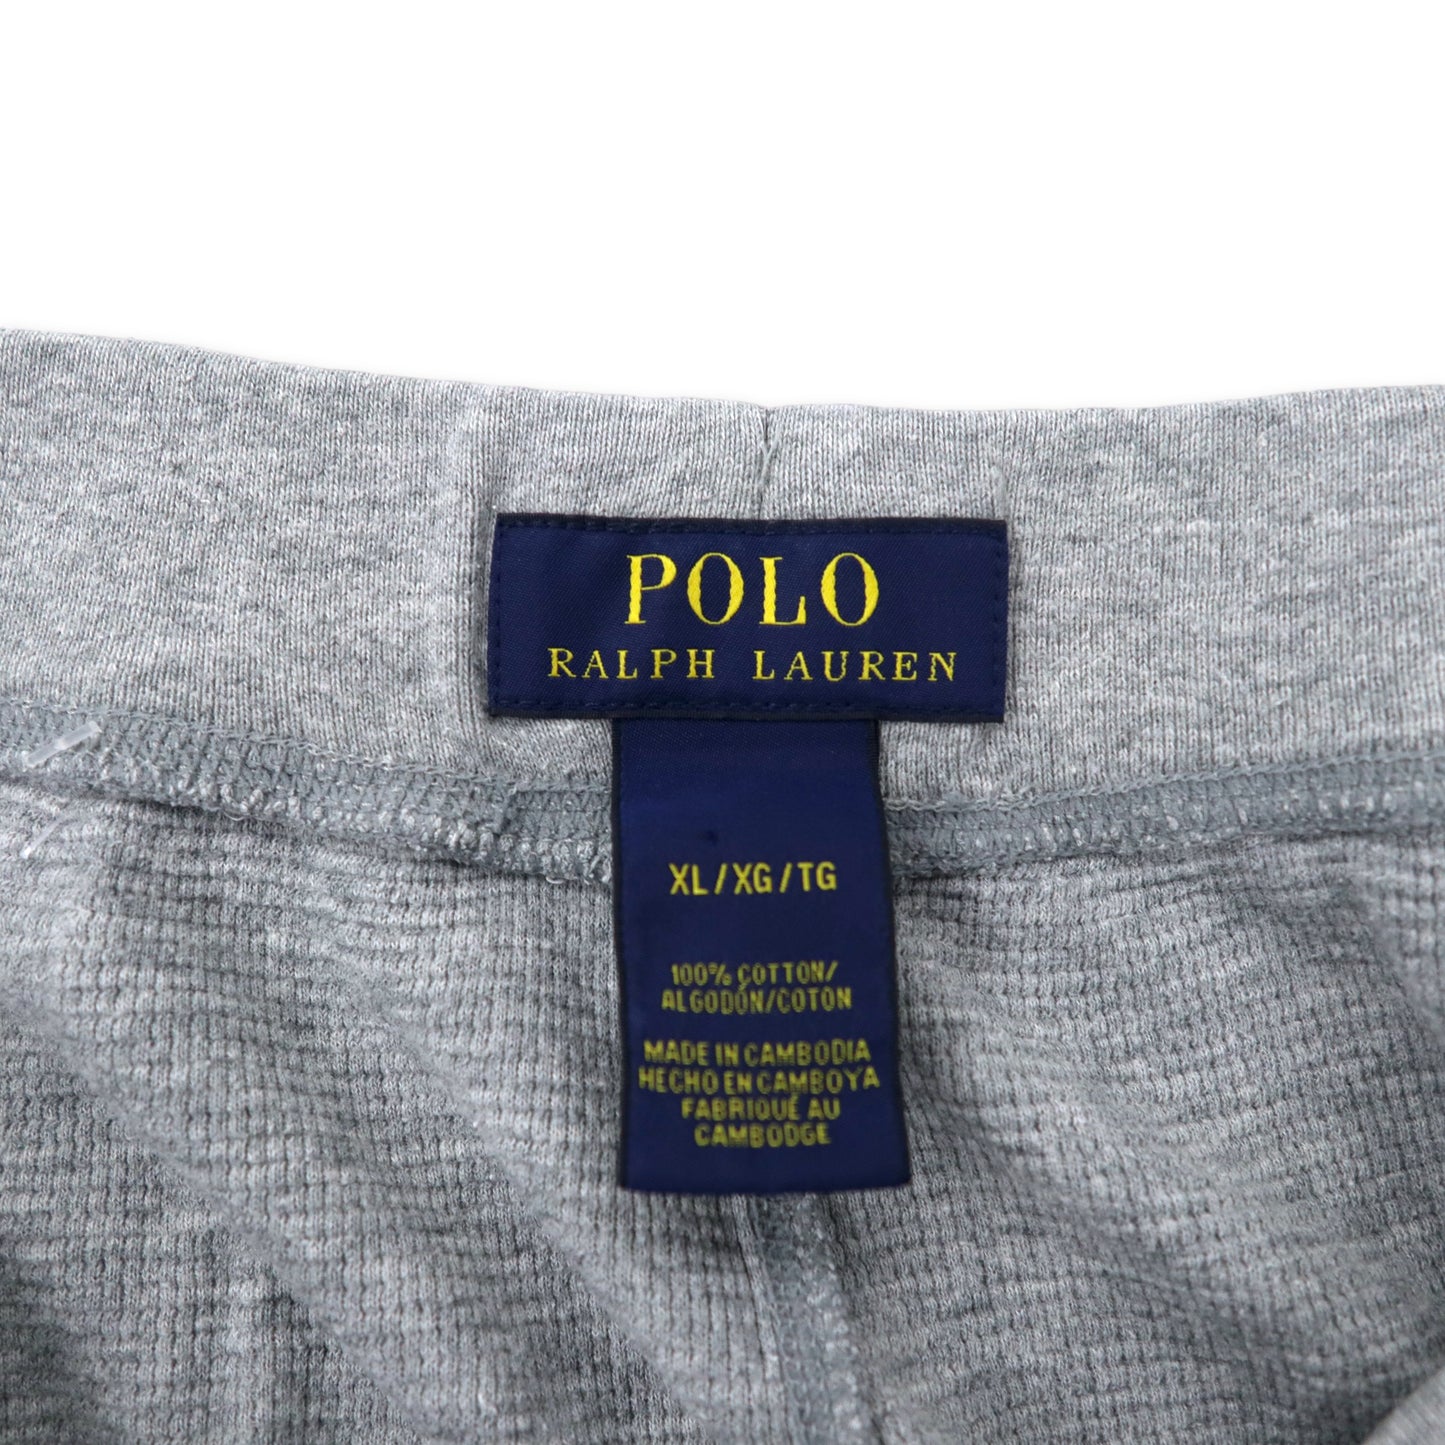 POLO RALPH LAUREN サーマル スウェットパンツ XL グレー ポリエステル スモールポニー刺繍